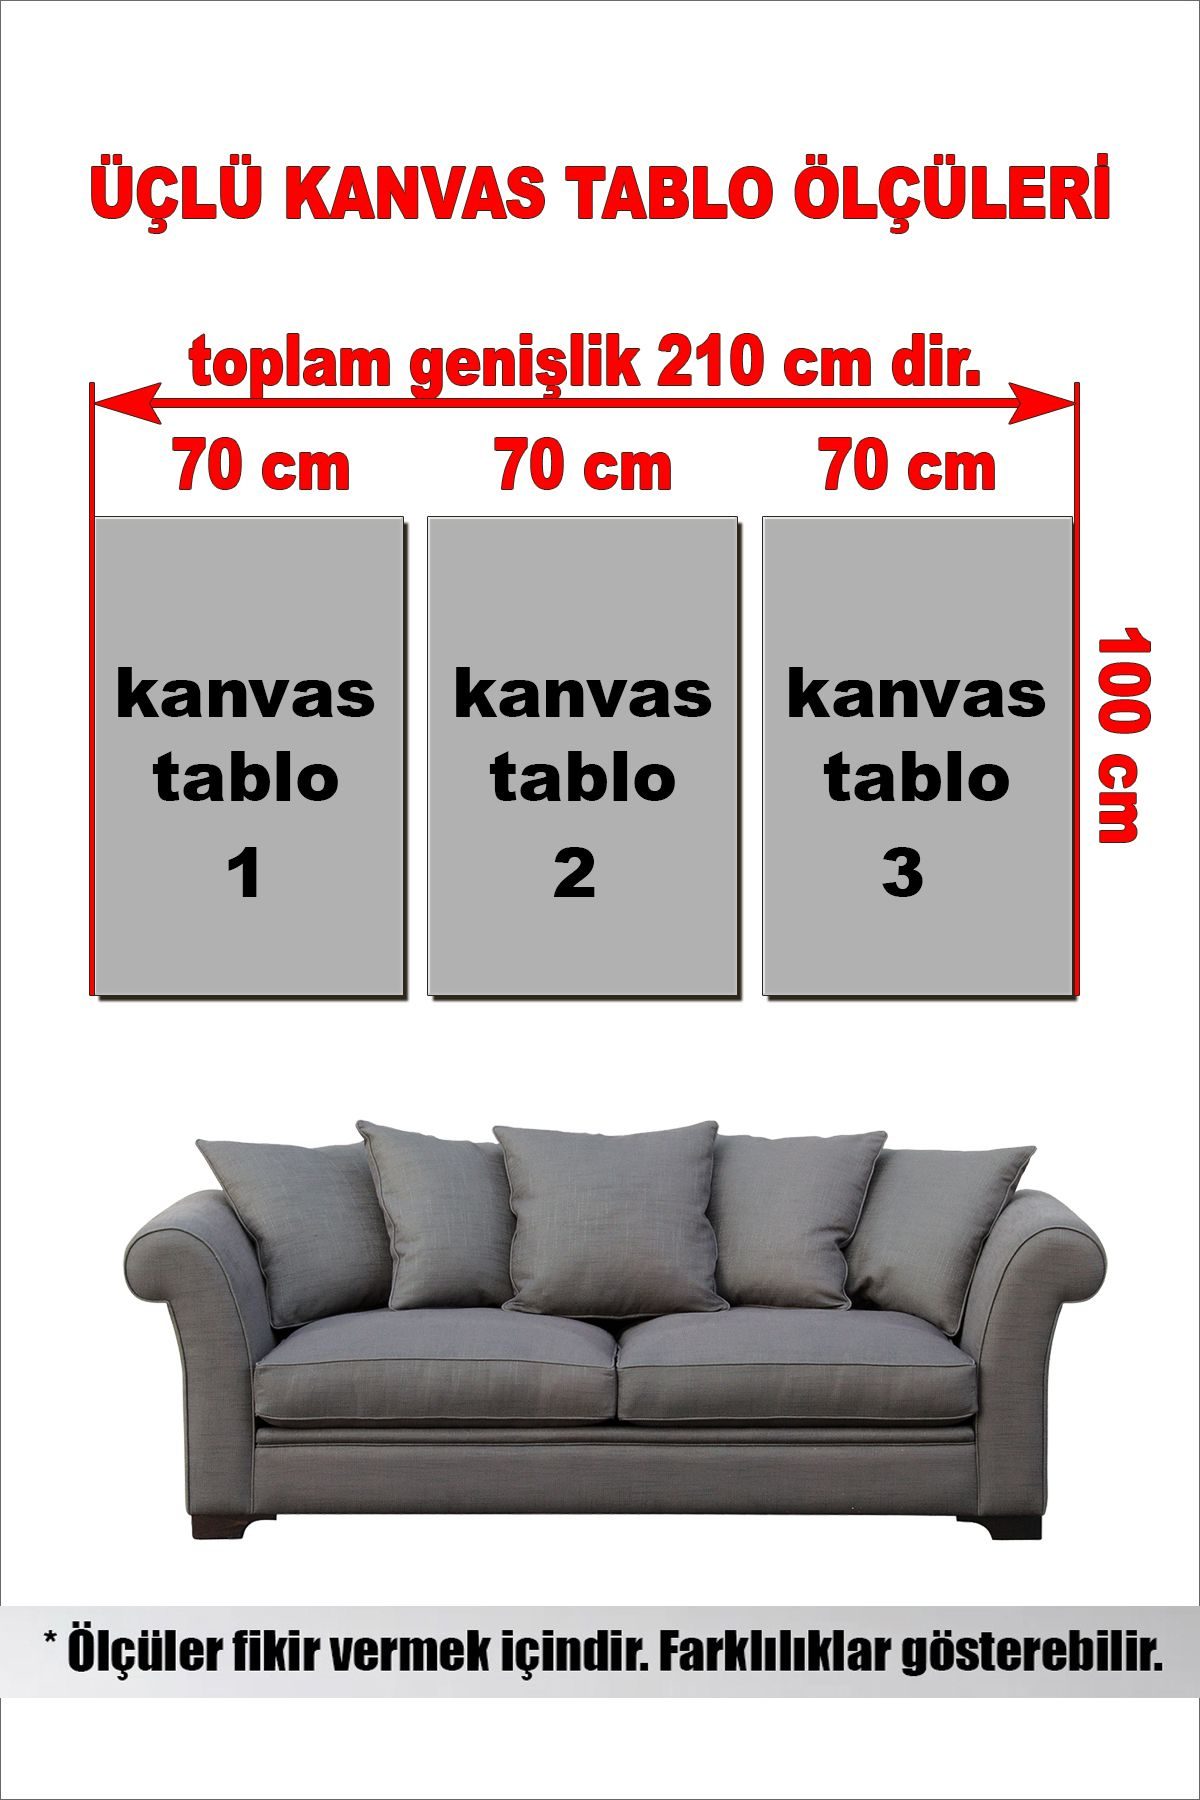 CLZ104 ATATÜRK KANVAS TABLO 3'LÜ SET.jpg  (210 x 100) cm